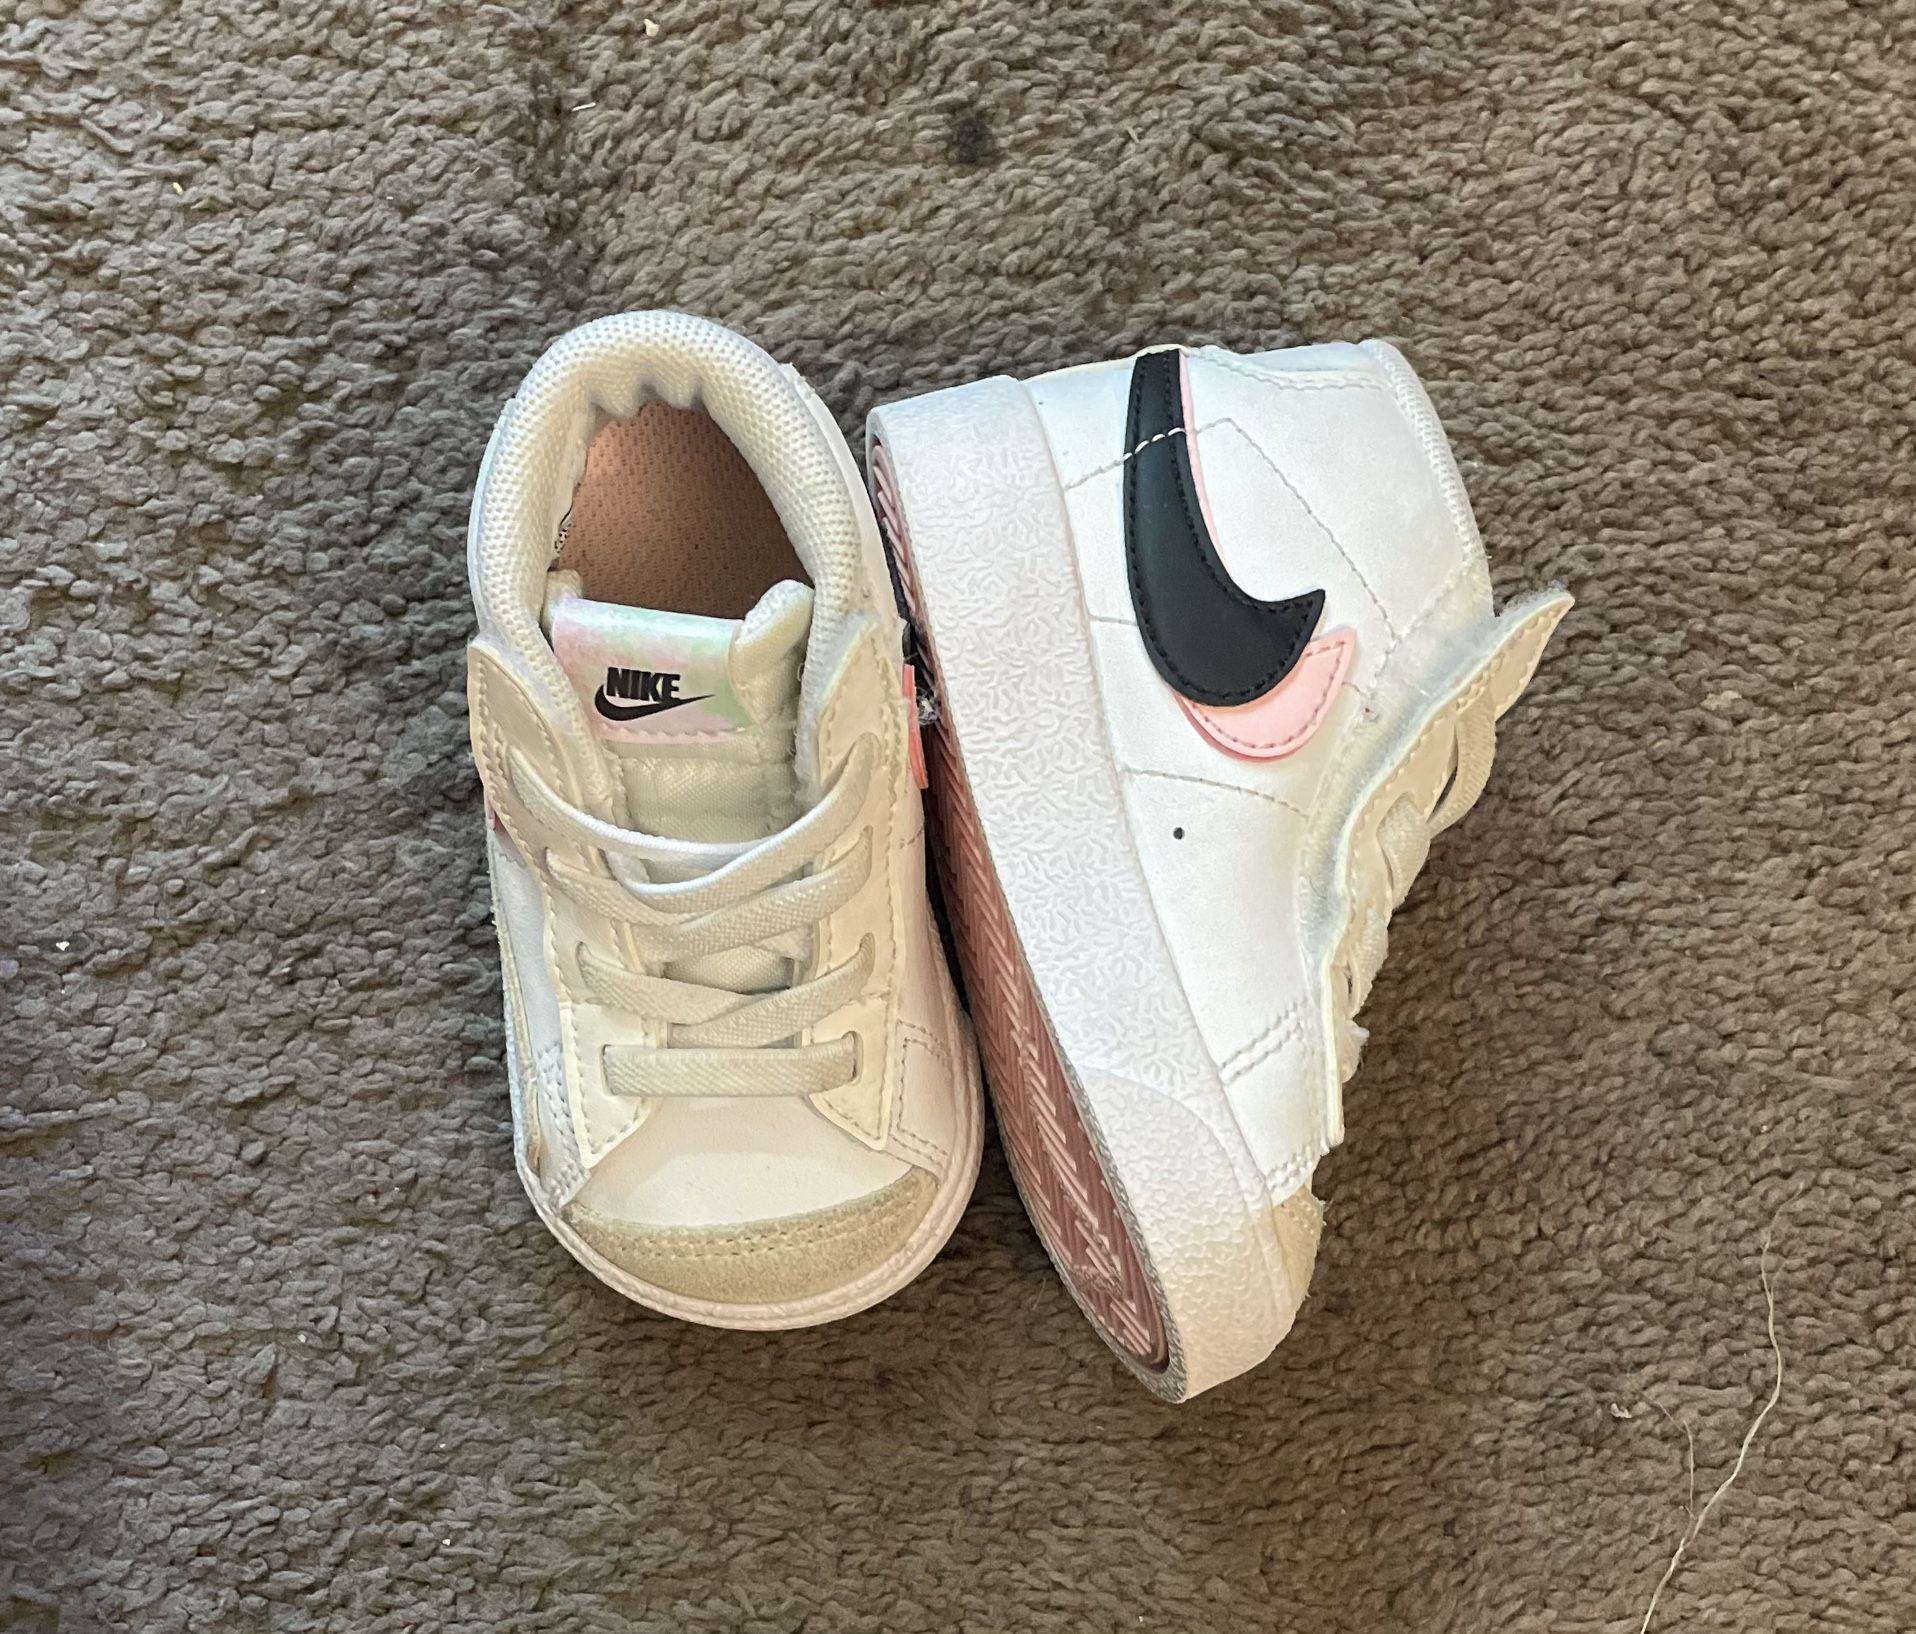 4c Nikes Toddler Girl Shoes